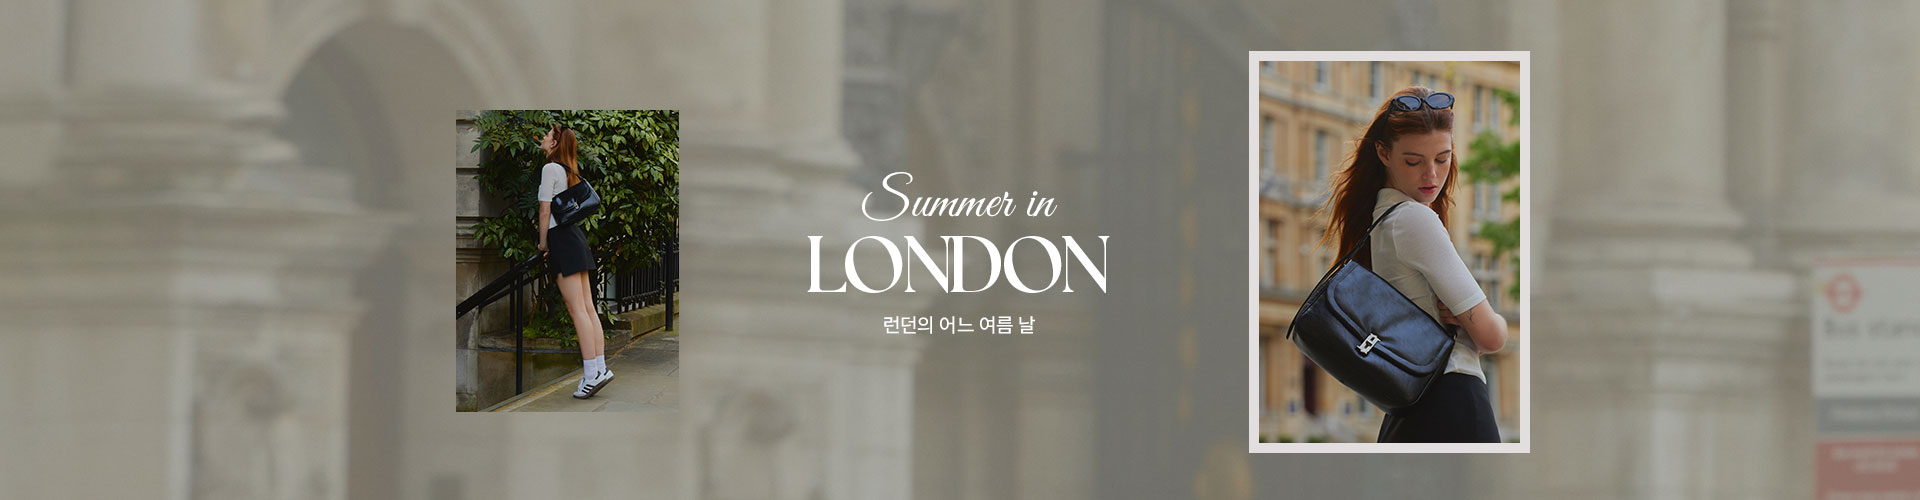 [통합/기] Summer in London